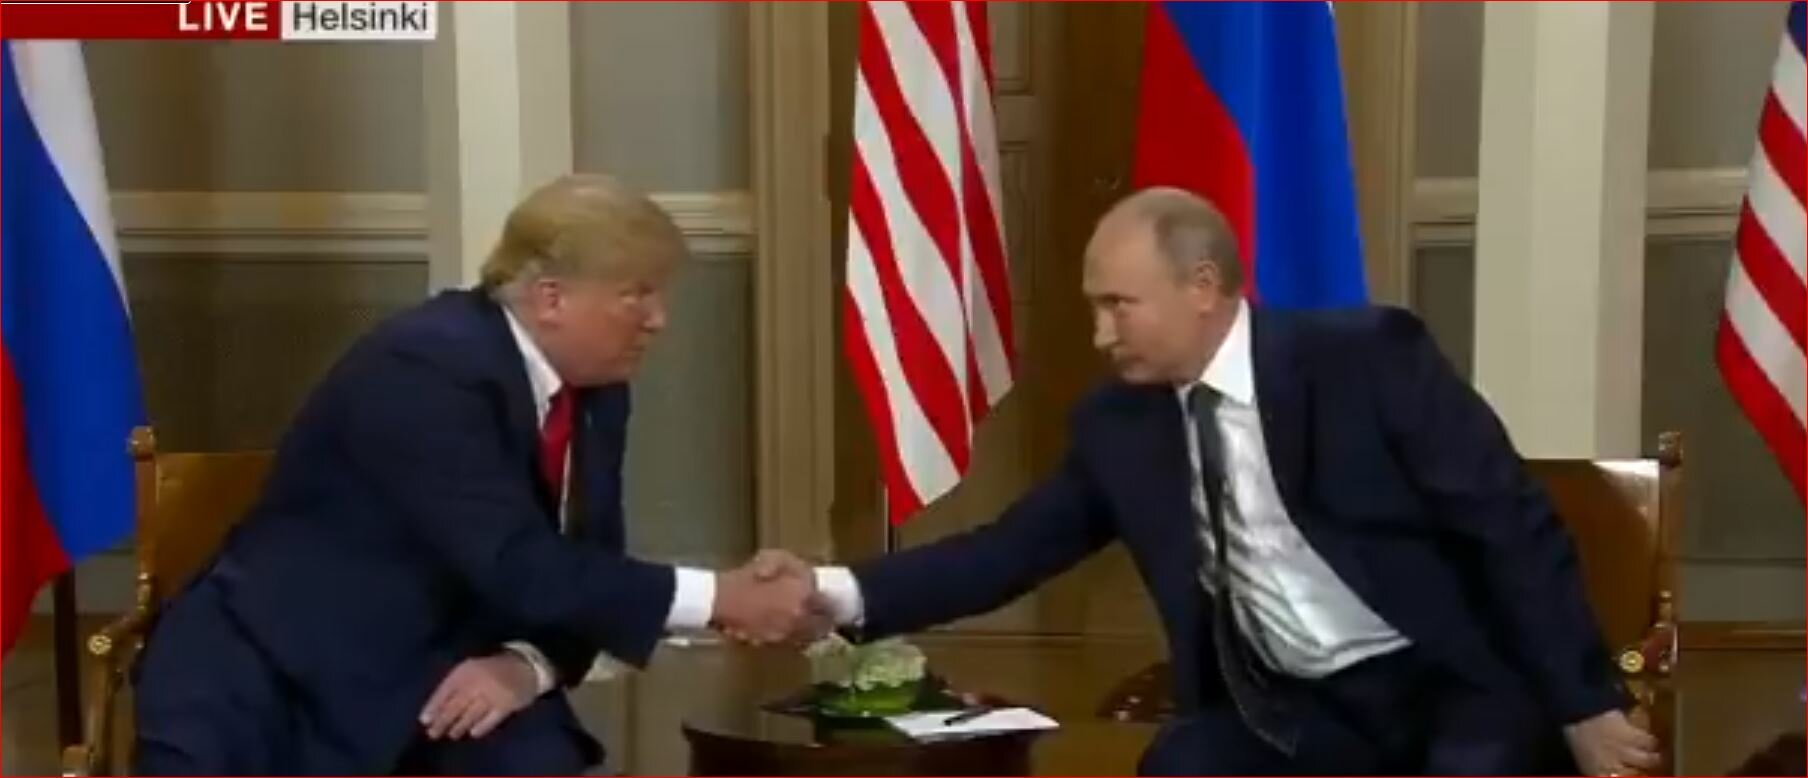 Трамп взял вступительное слово и обменялся рукопожатием с Владимиром Путиным в Хельсинки - кадры